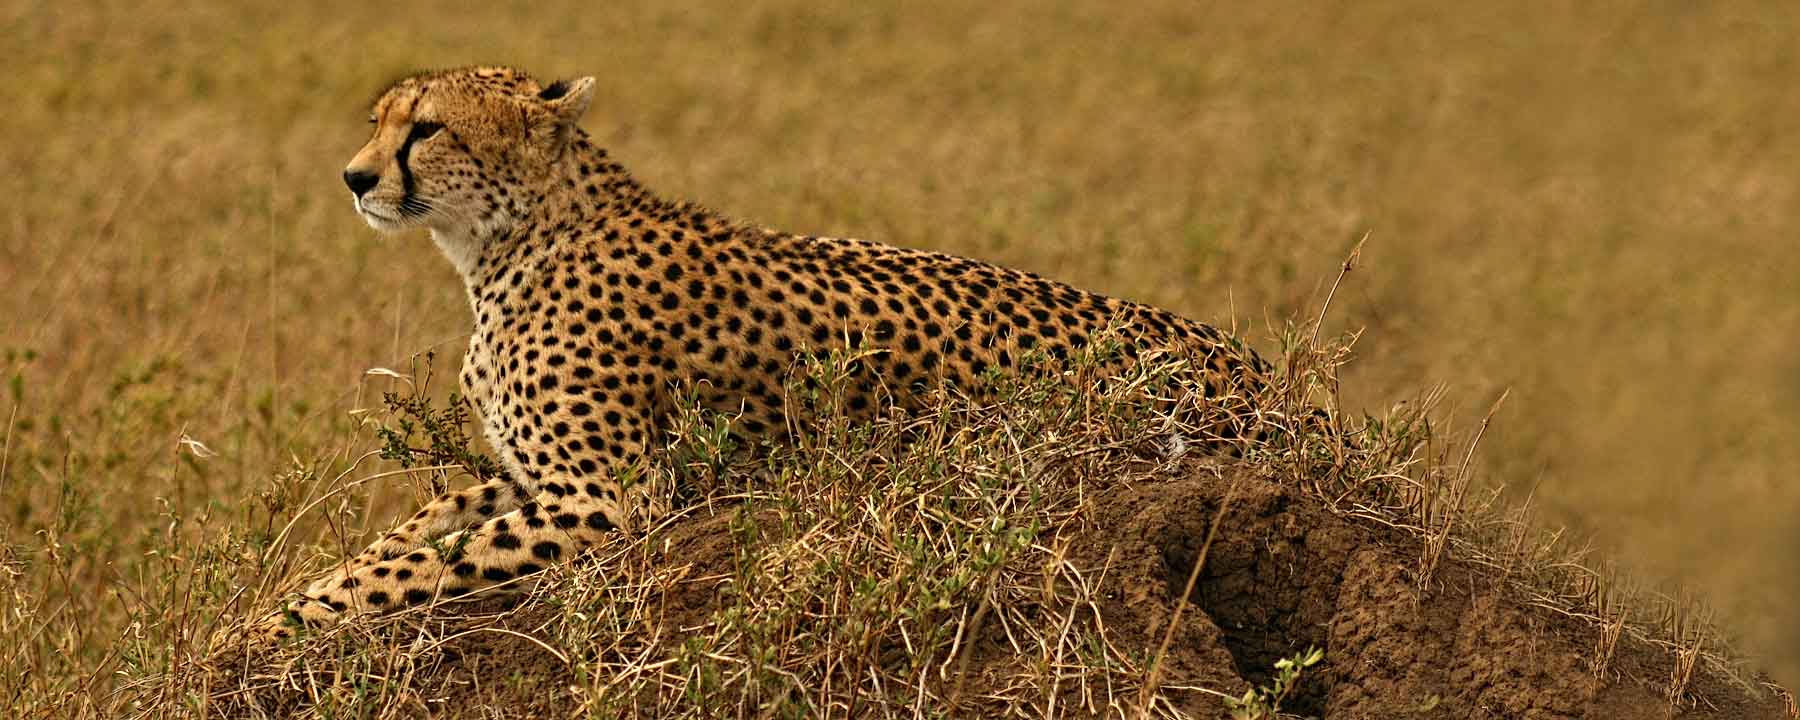 Tanzania Cheetah Serengeti